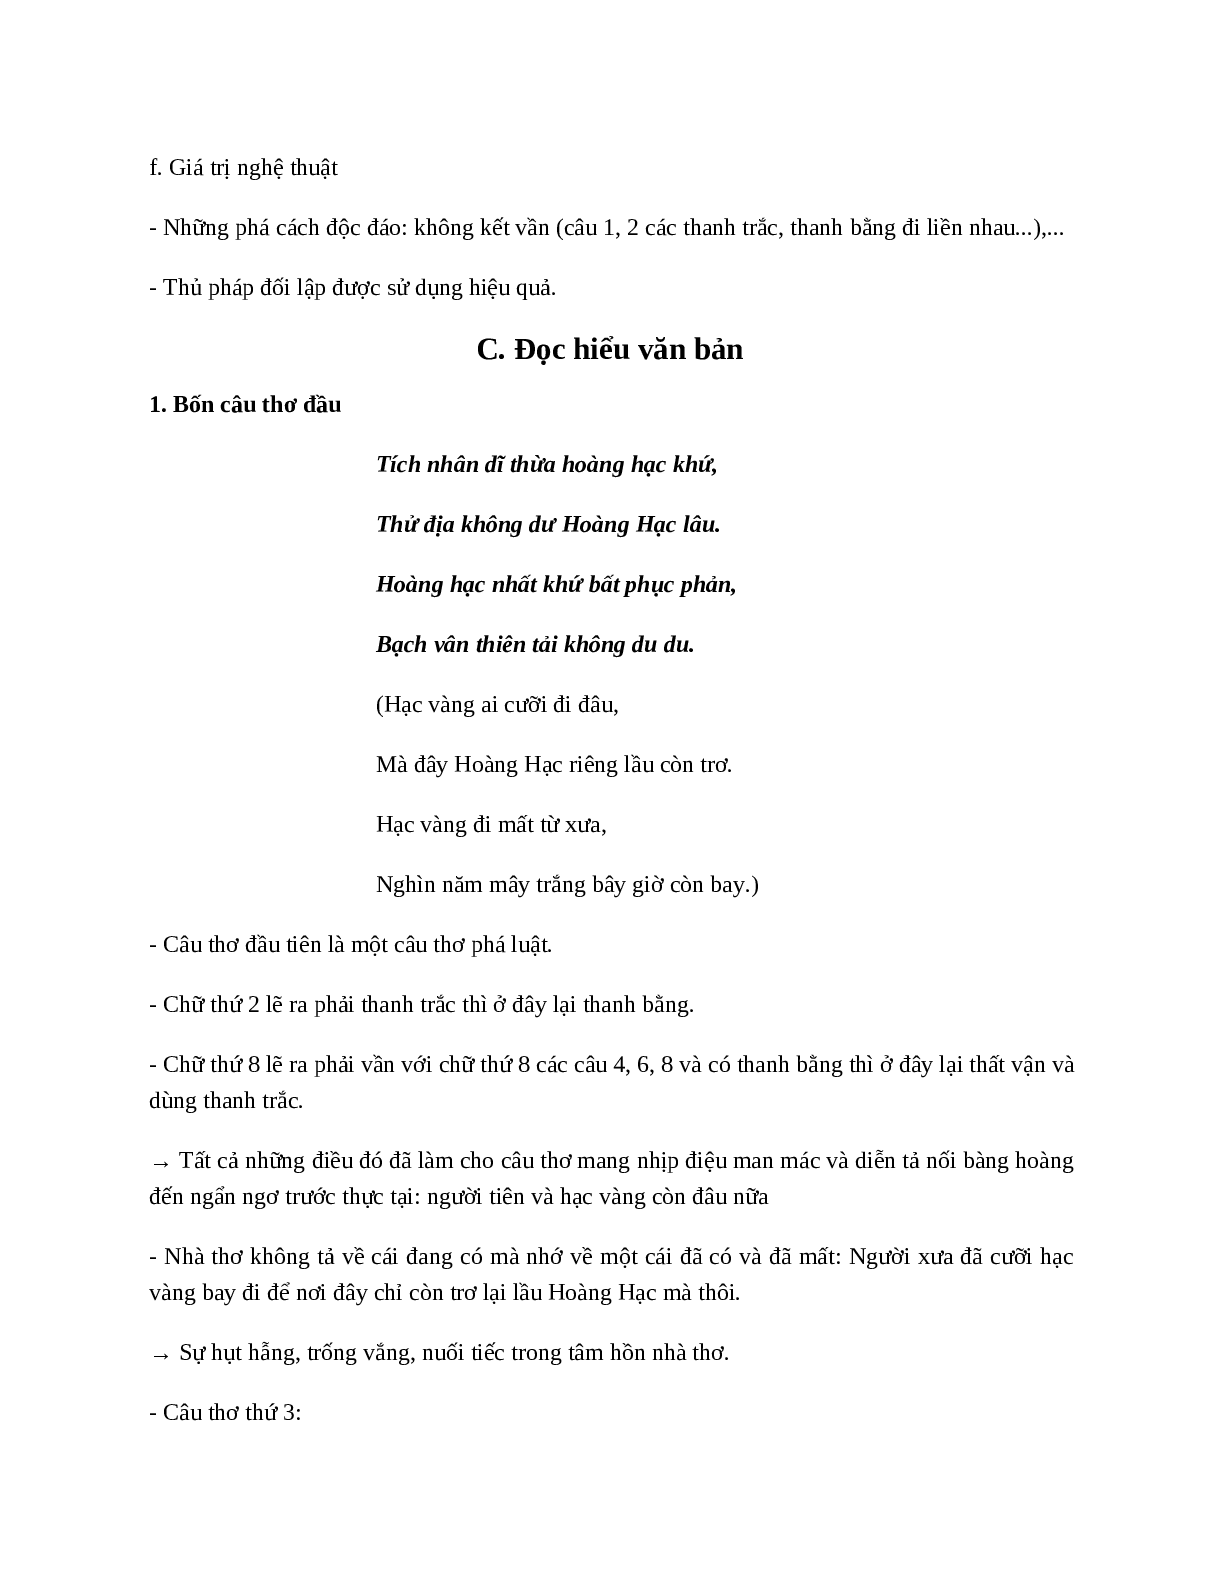 Lầu Hoàng Hạc (Hoàng Hạc Lâu) - Tác giả tác phẩm - Ngữ văn lớp 10 (trang 4)